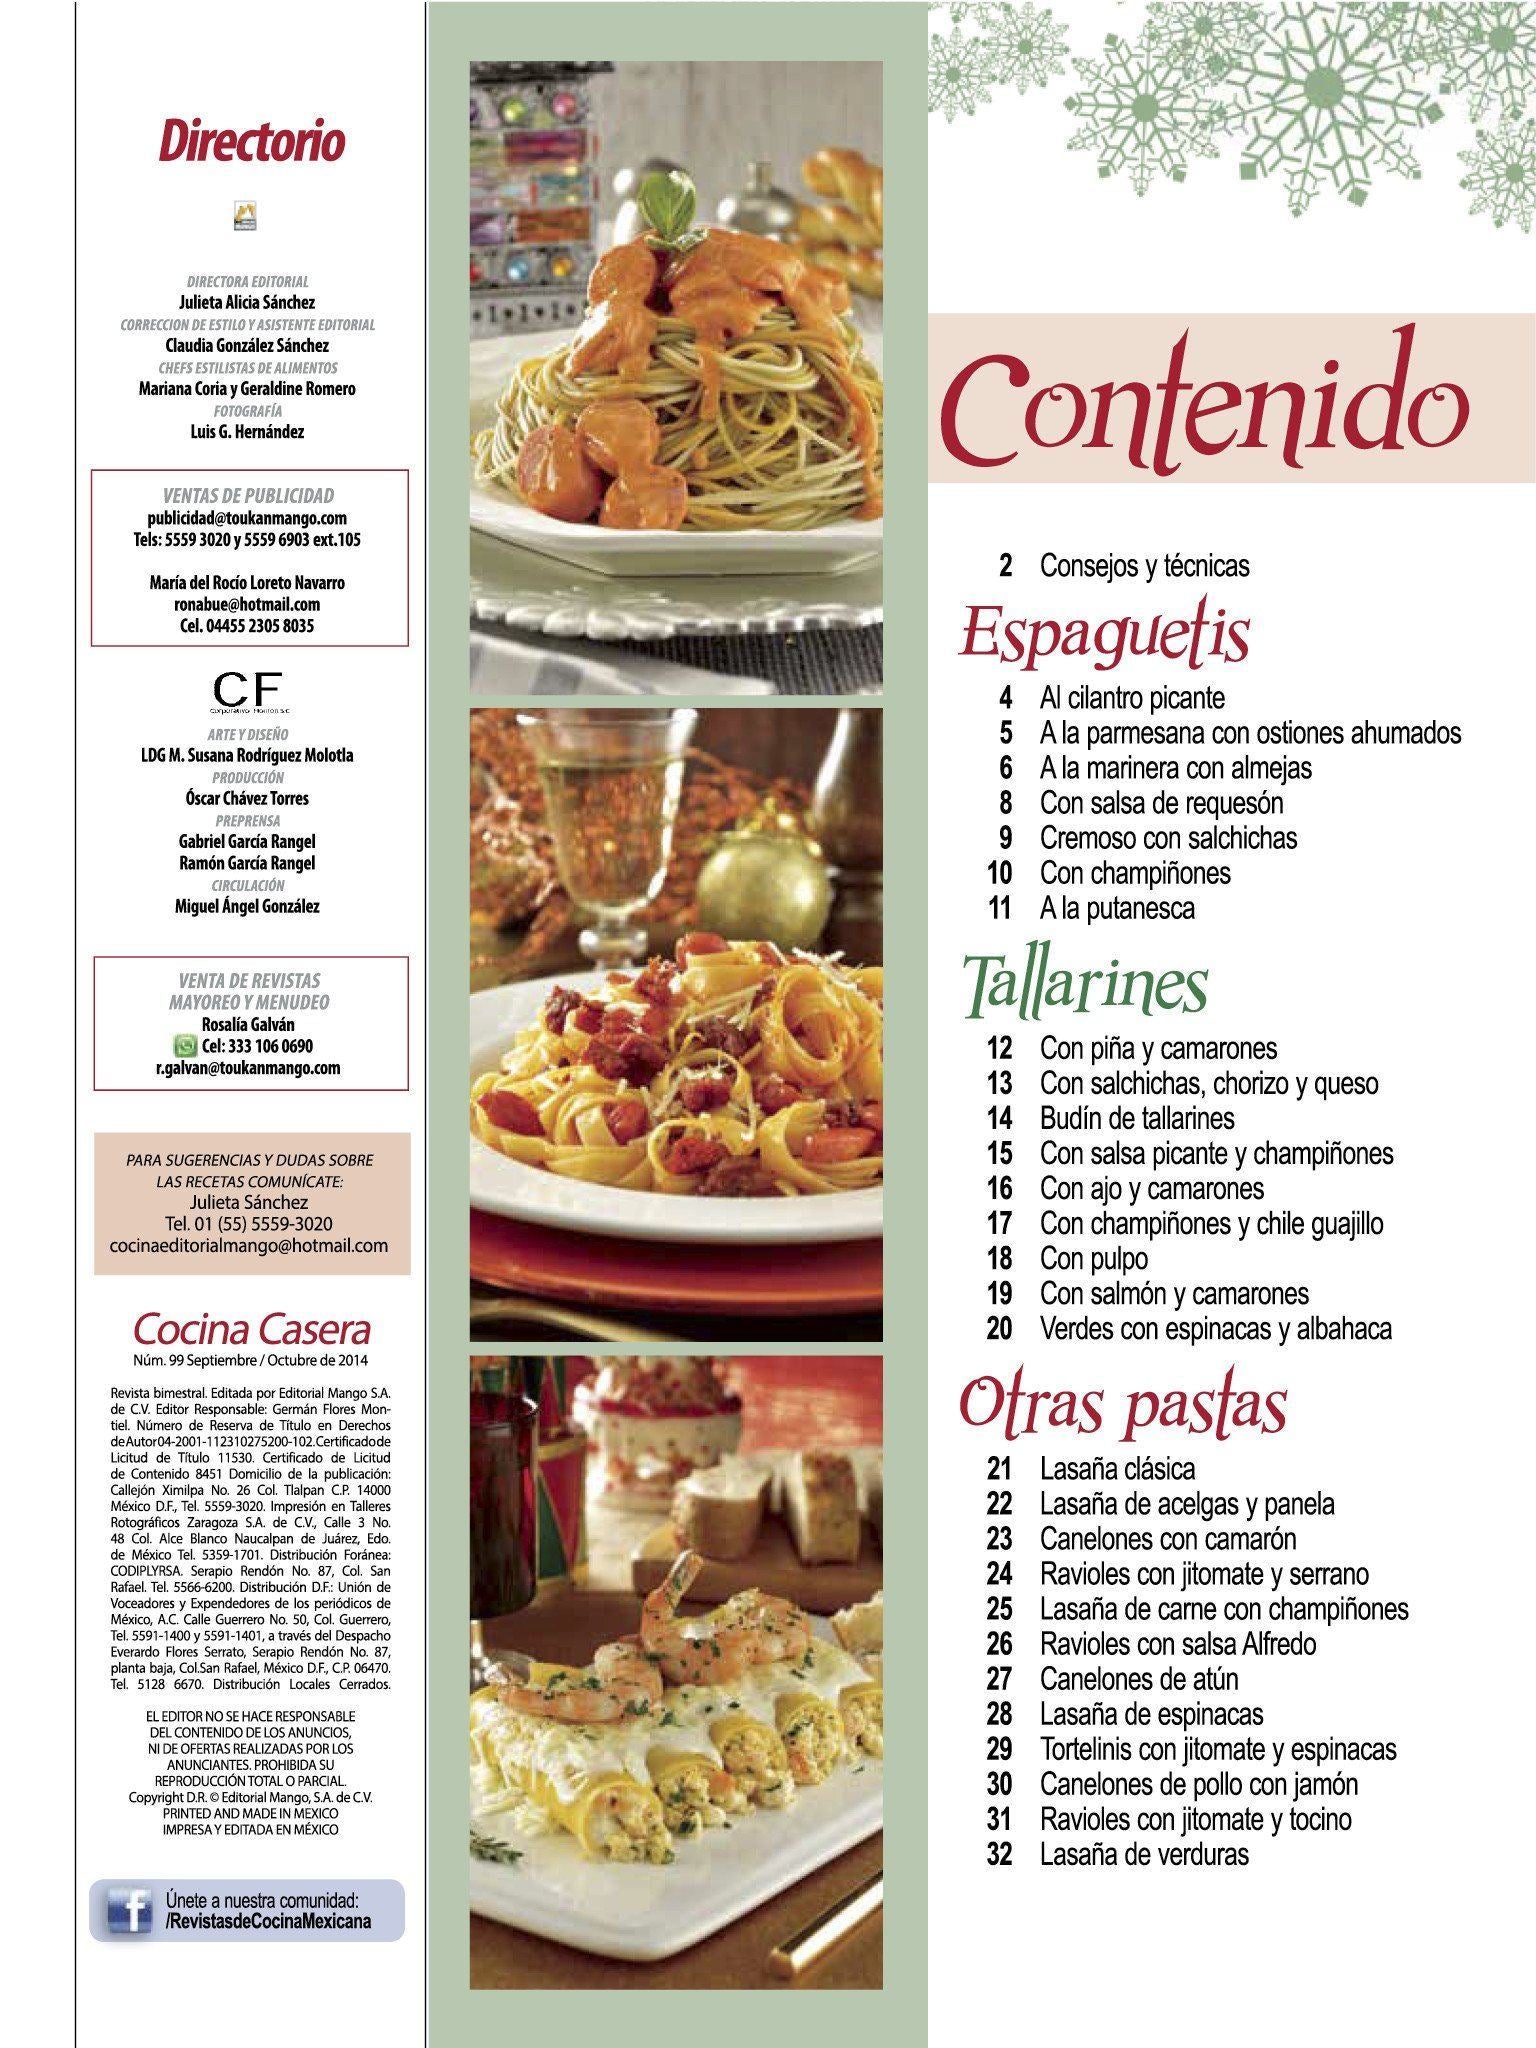 Cocina Casera 99 - Espaguetis y tallarines, lasa̱as, canelones y ravioles - Formato Digital - ToukanMango